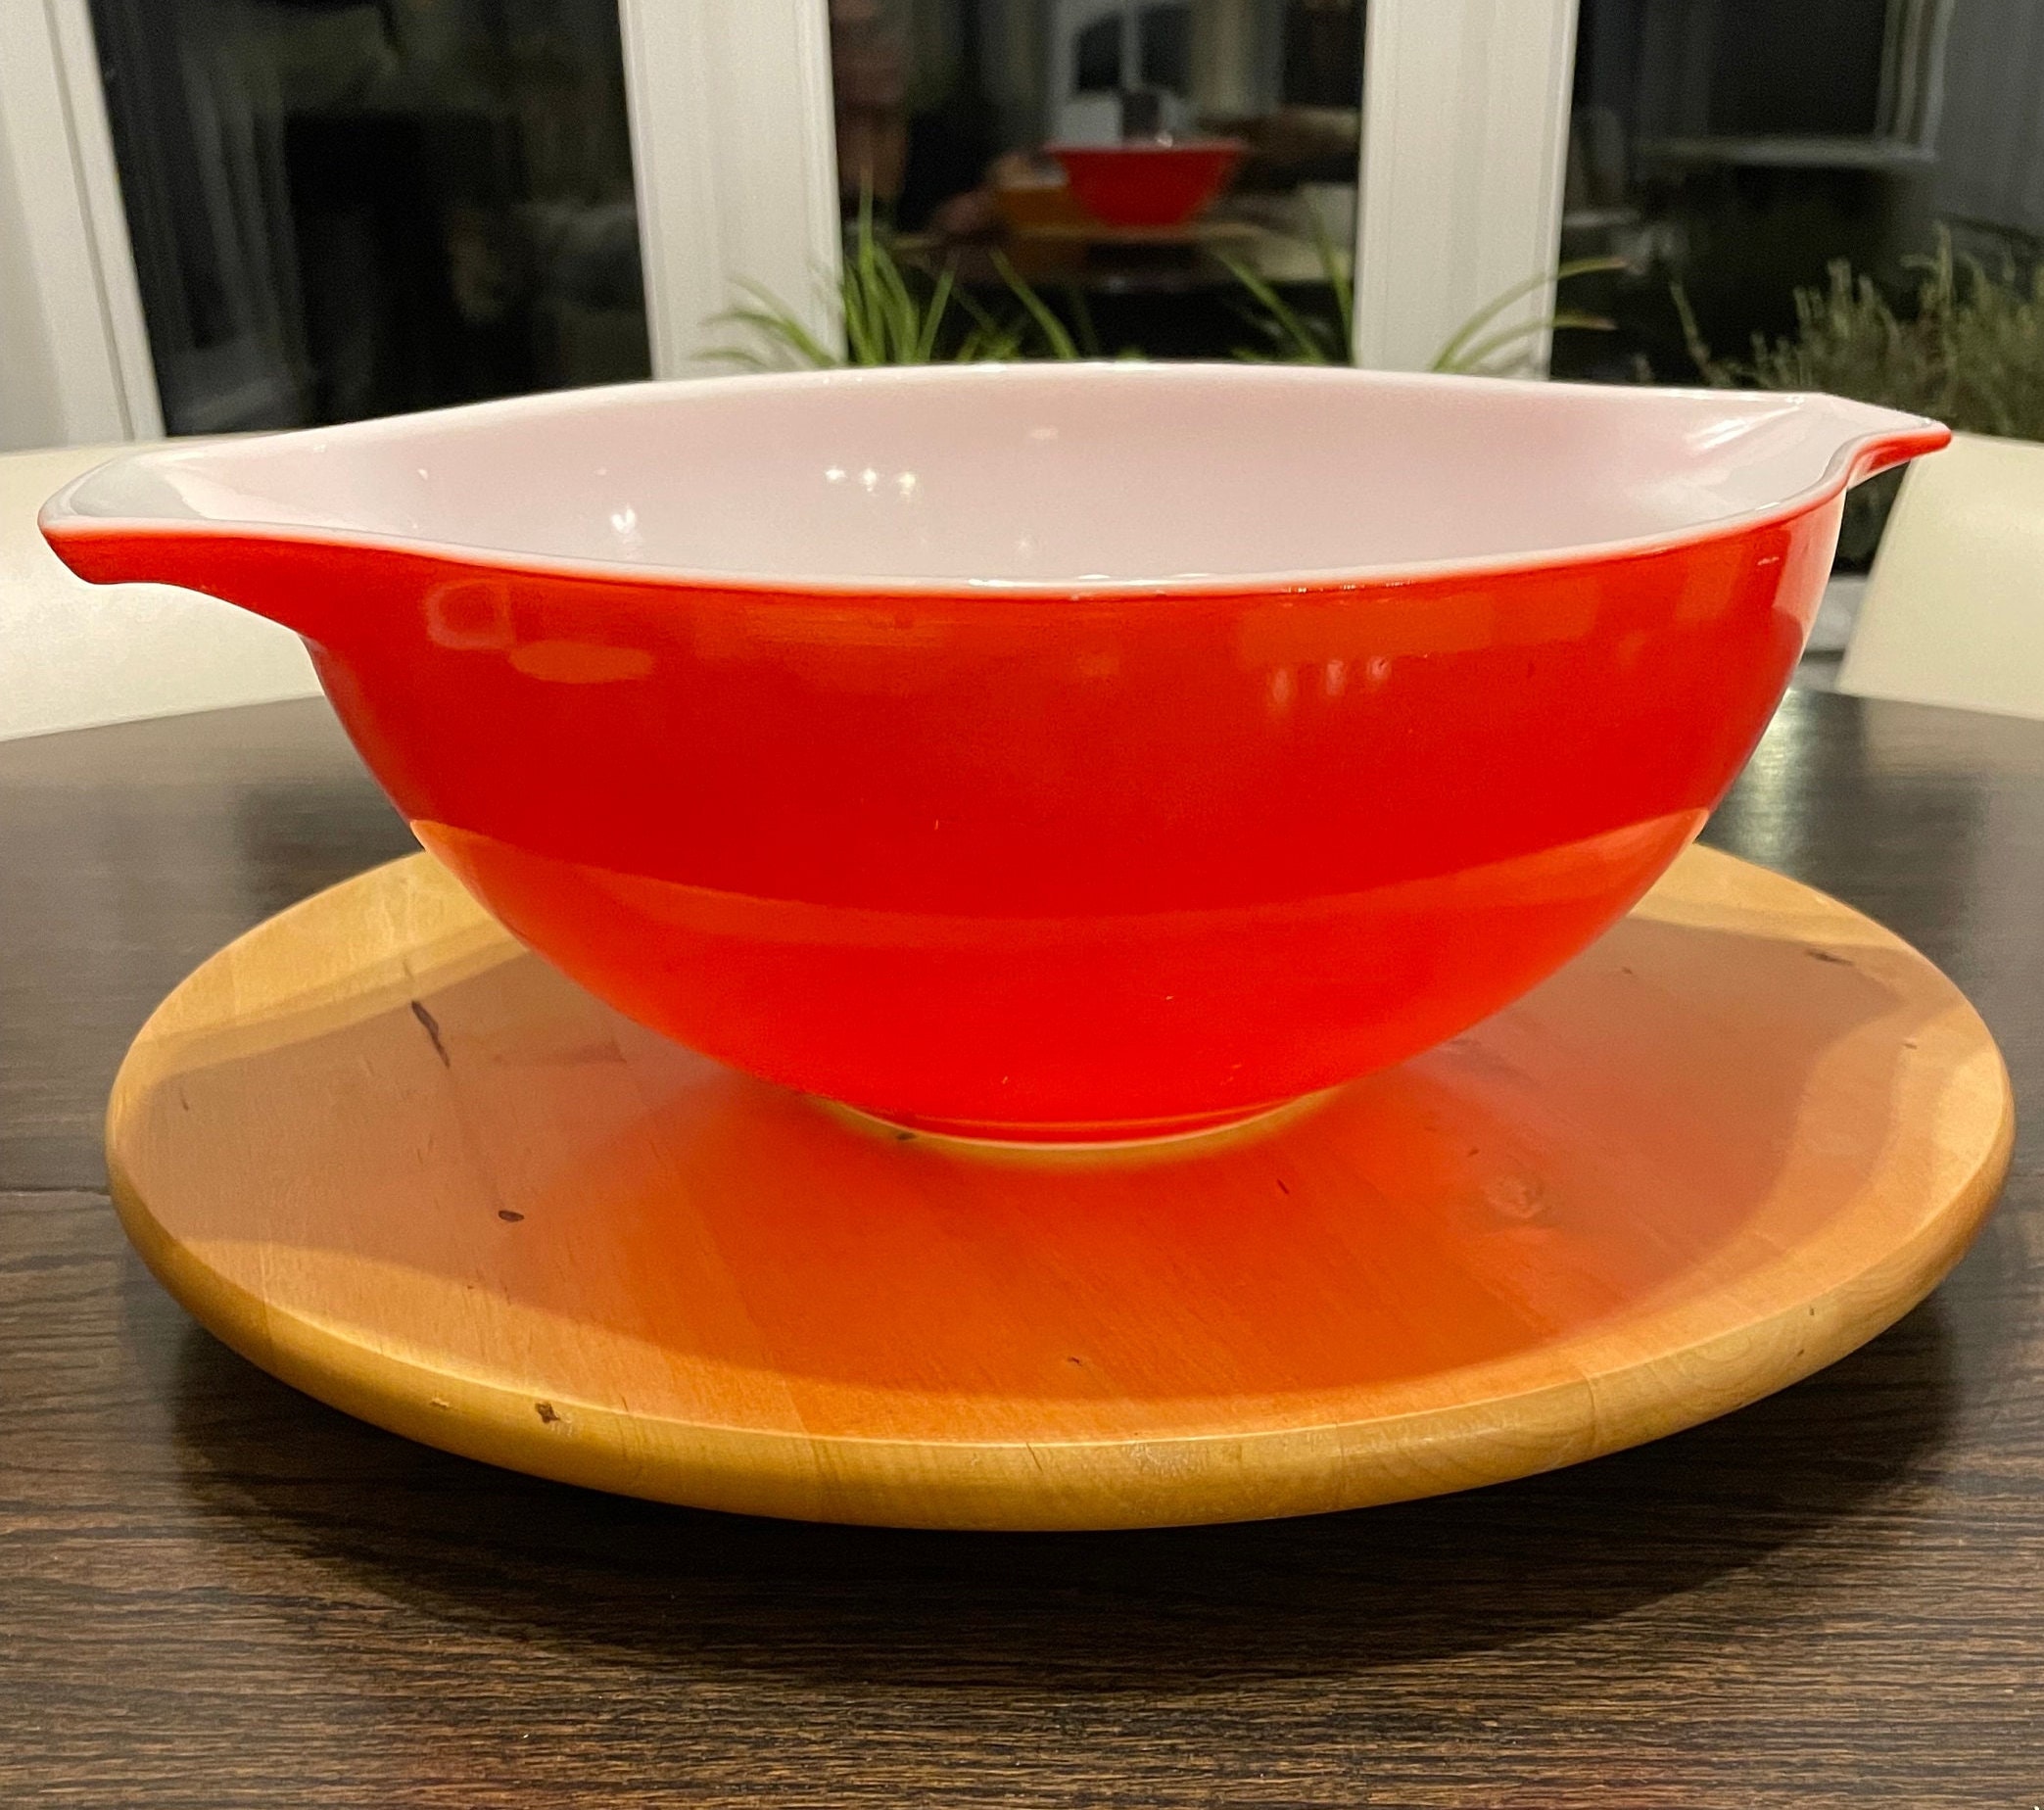 Smart Essentials 4-quart Mixing Bowl, Red Plastic Cover